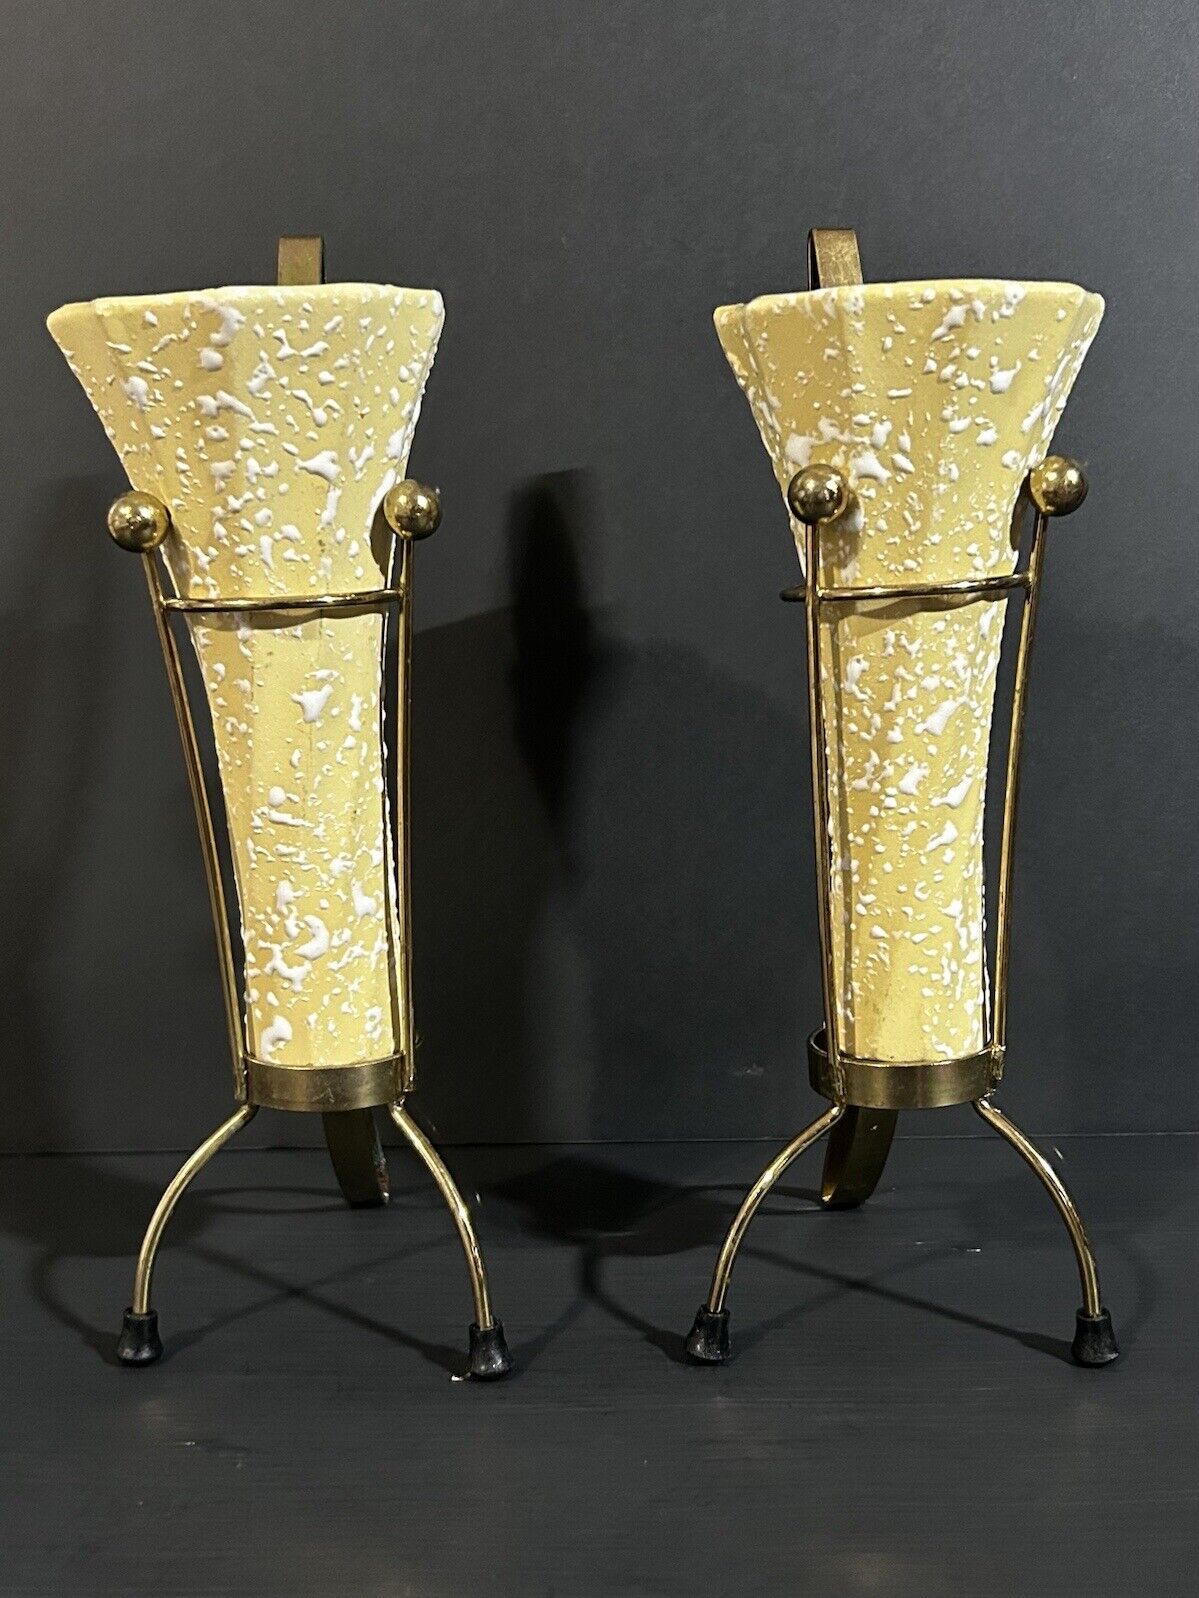 2 Ea. Vintage White Speckled Bud/Flower Vase With Stands